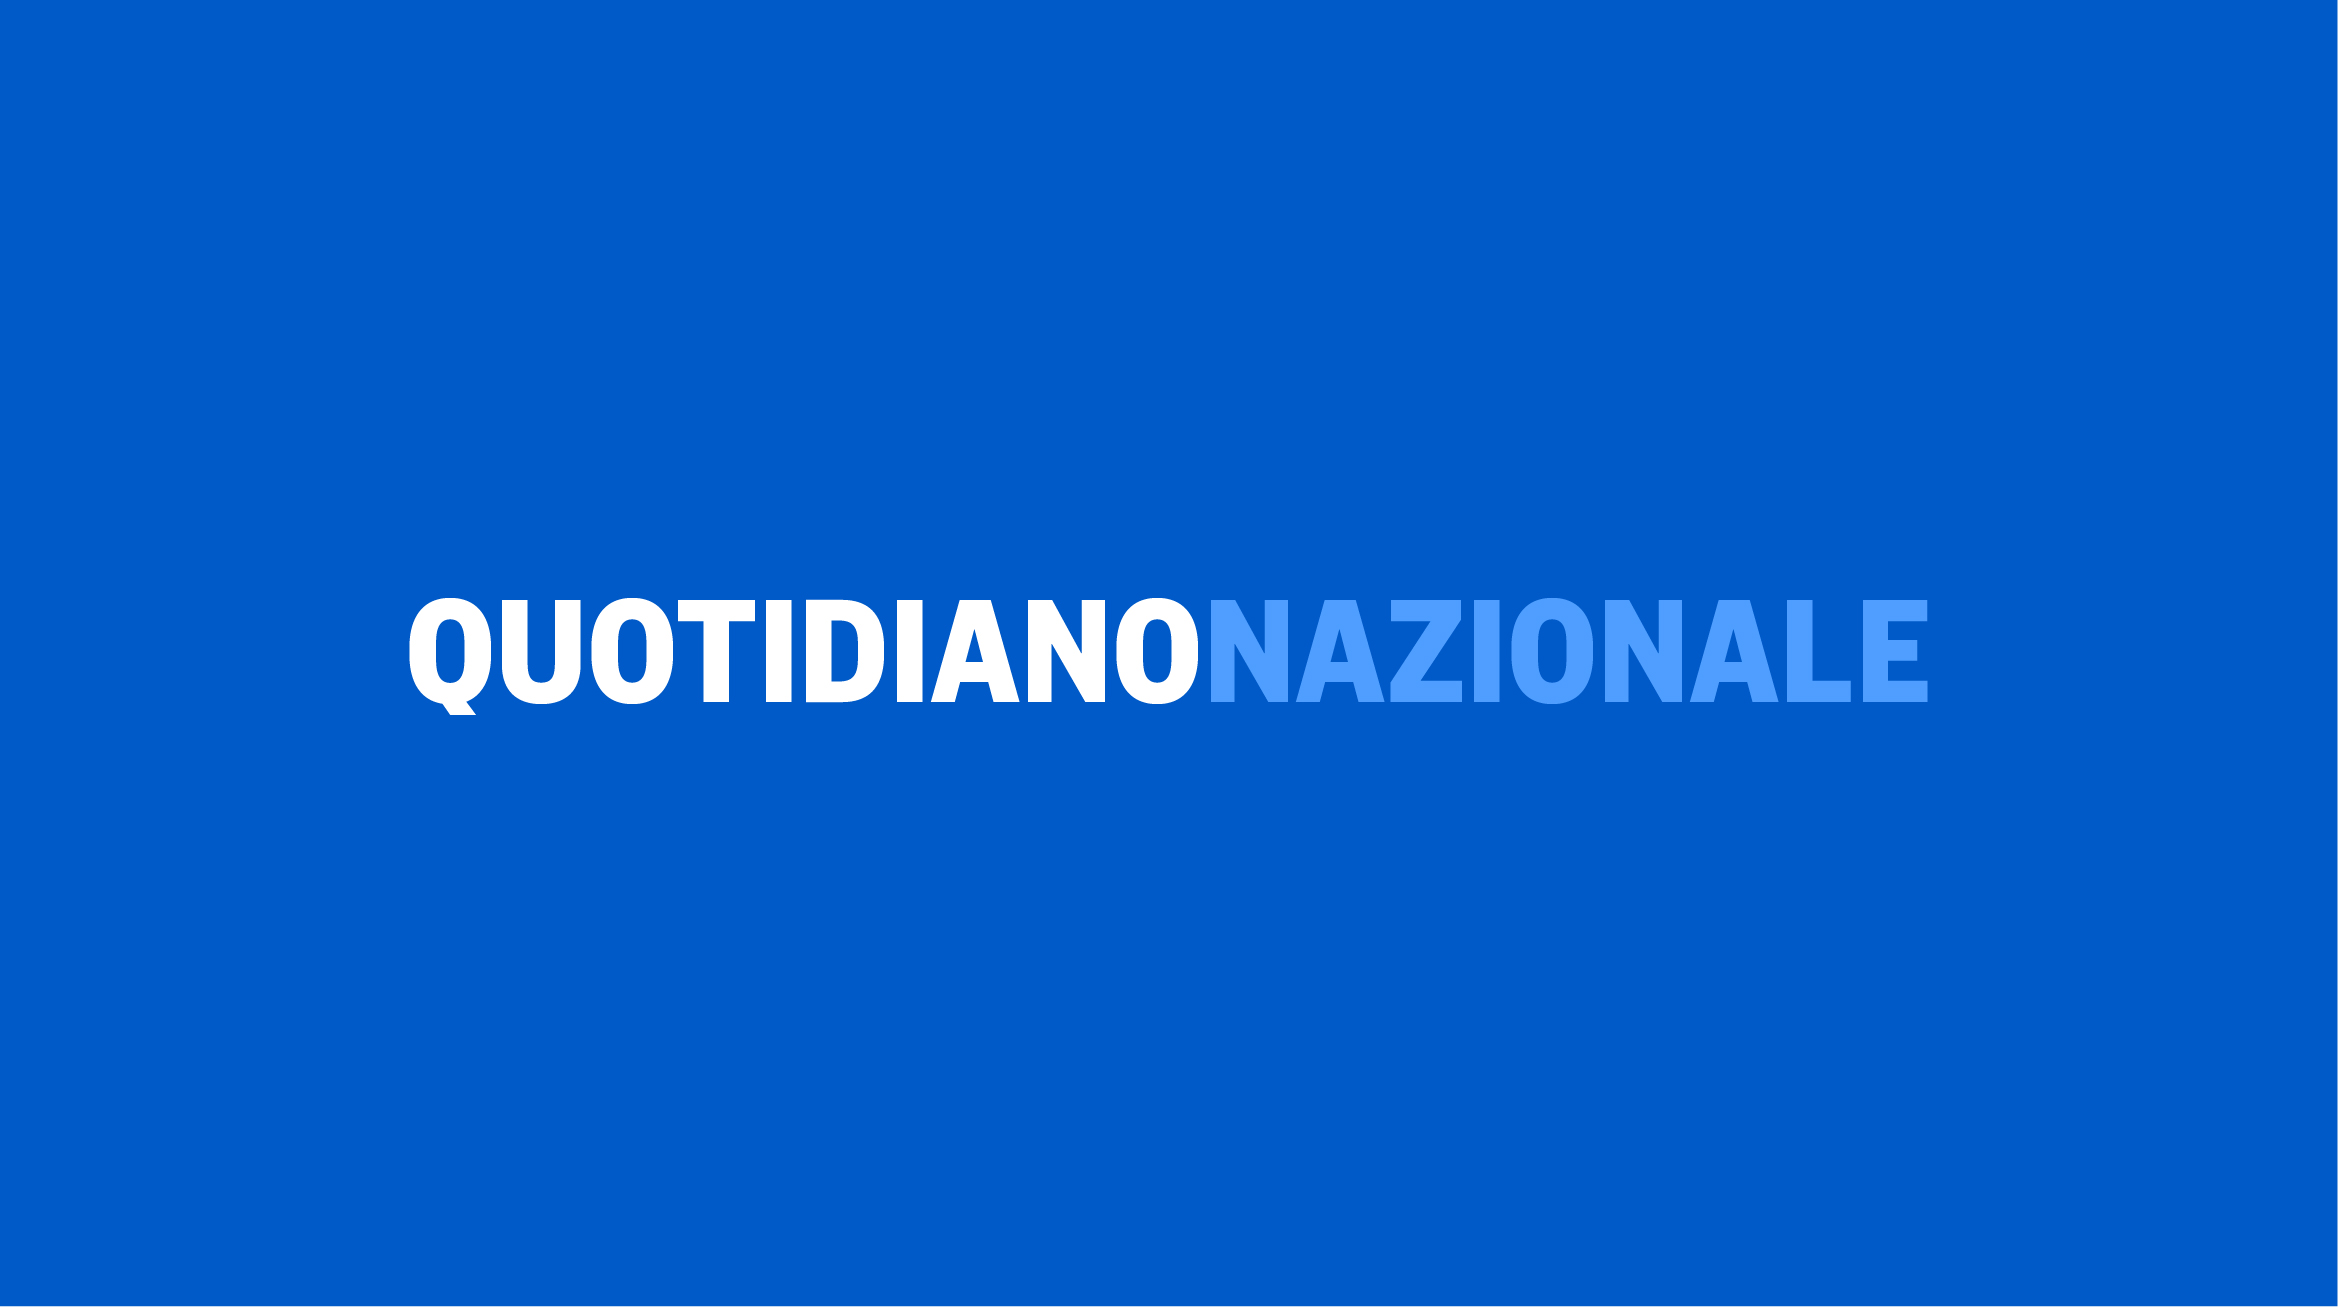 www.quotidiano.net